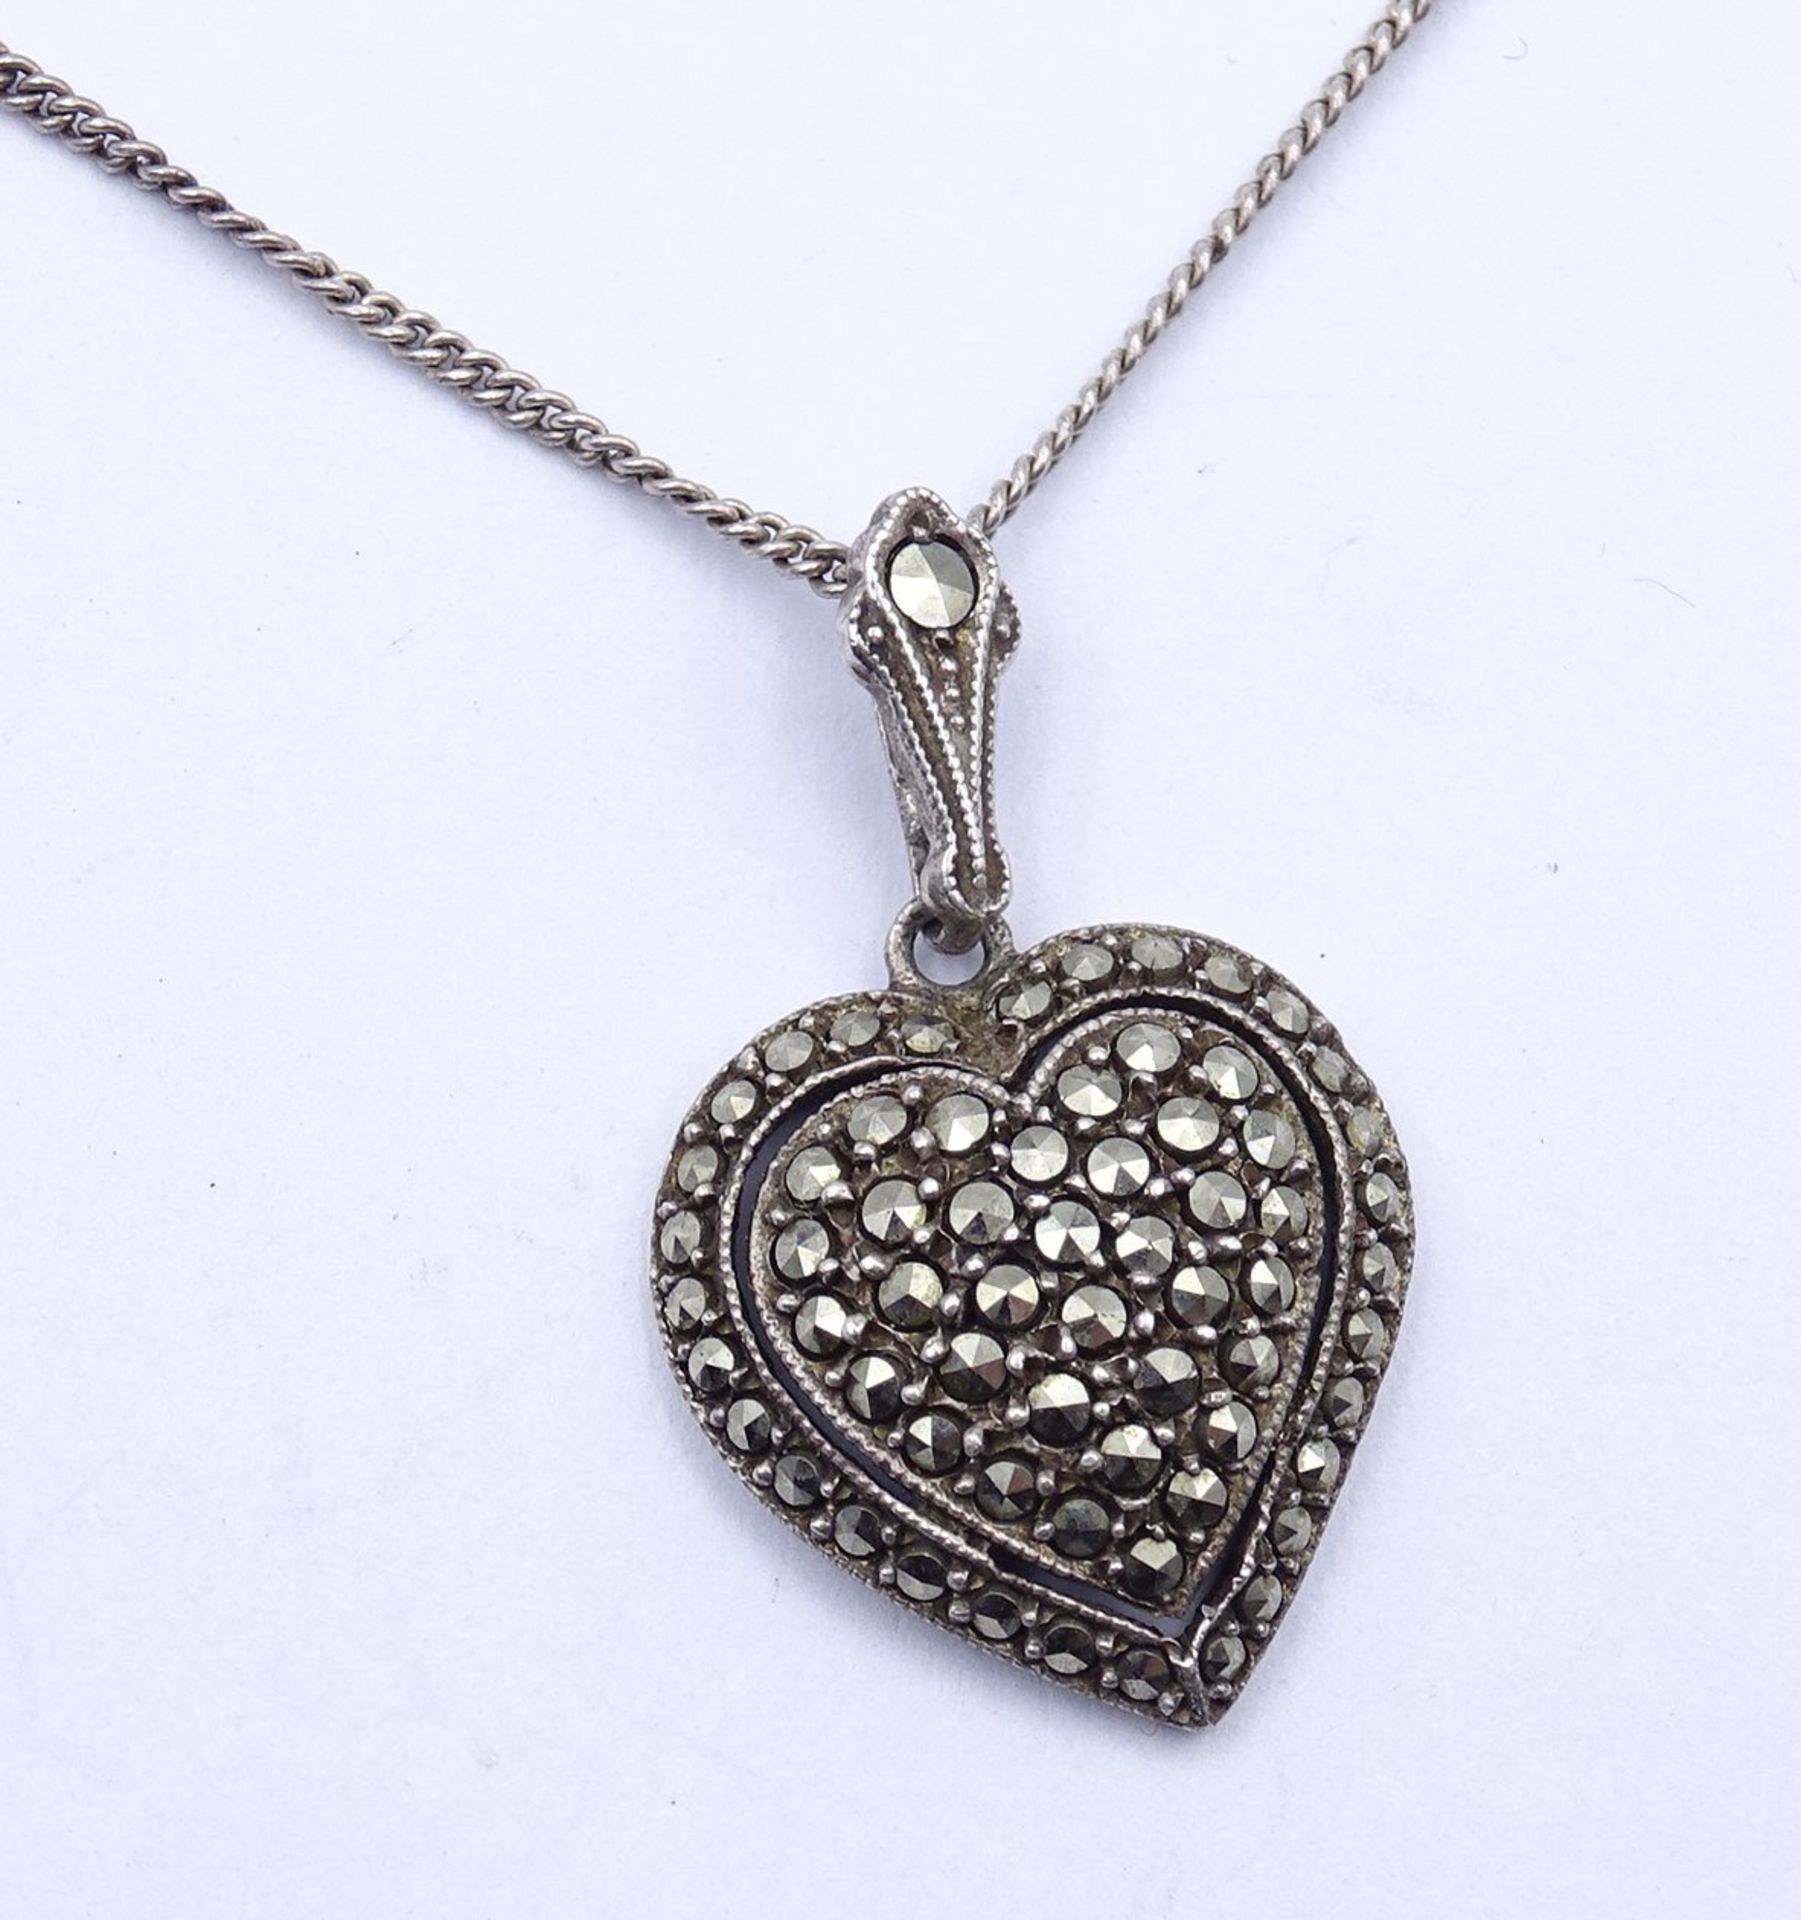 Halskette mit Markasiten Herz Anhänger, Silber 0.835, Kette L. 51cm, zus. 5,4g. - Bild 2 aus 4